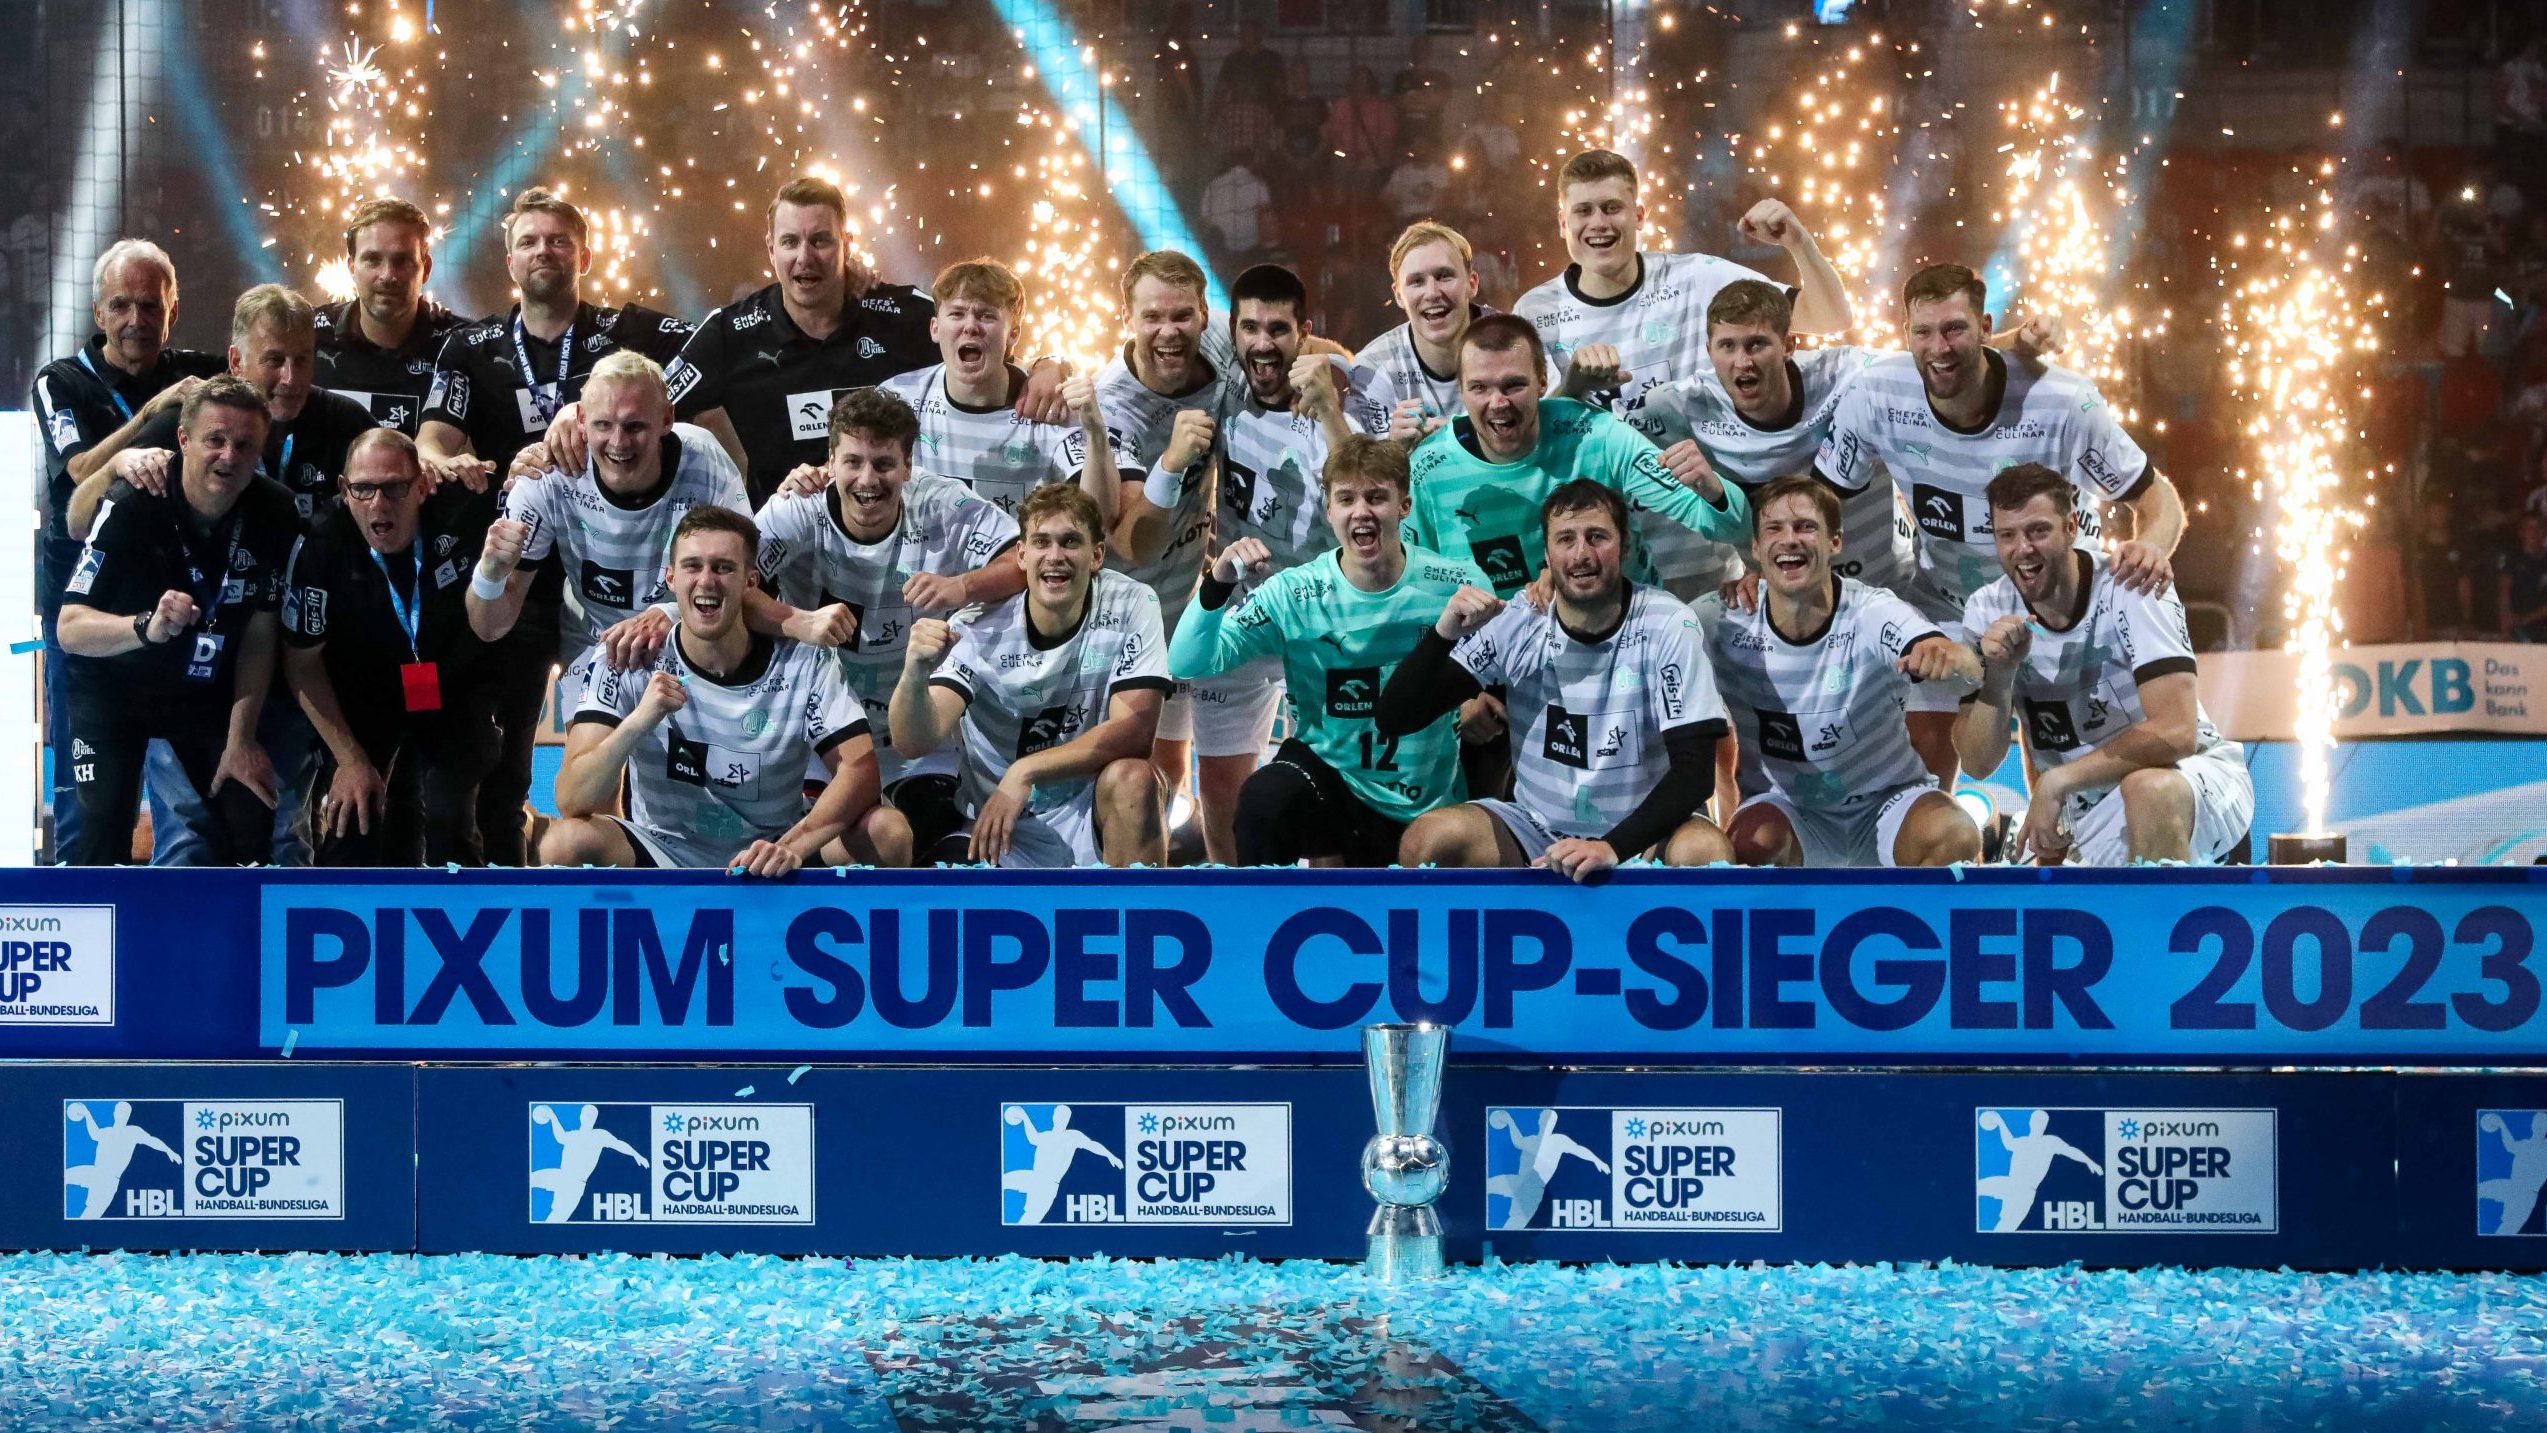 Pixum Super Cup bietet großartigen Handball